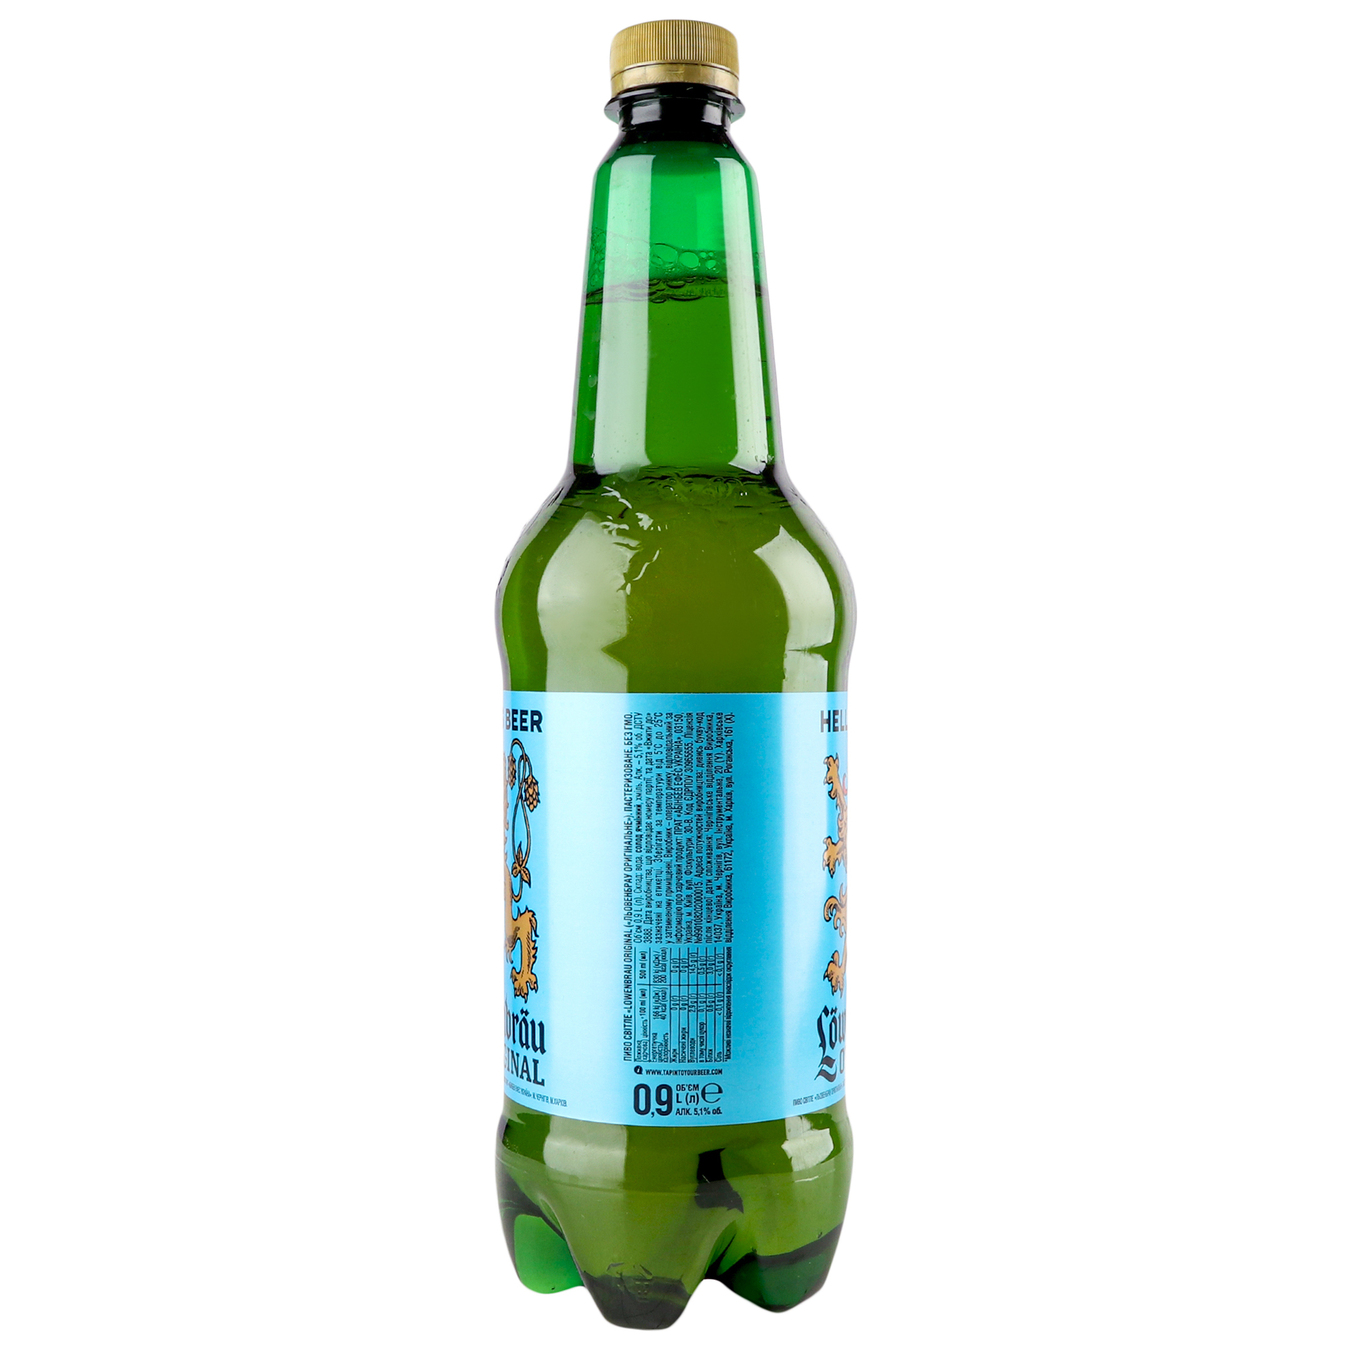 Beer Lowenbrau Original light pasteurized 5.1% 0.9 l 2